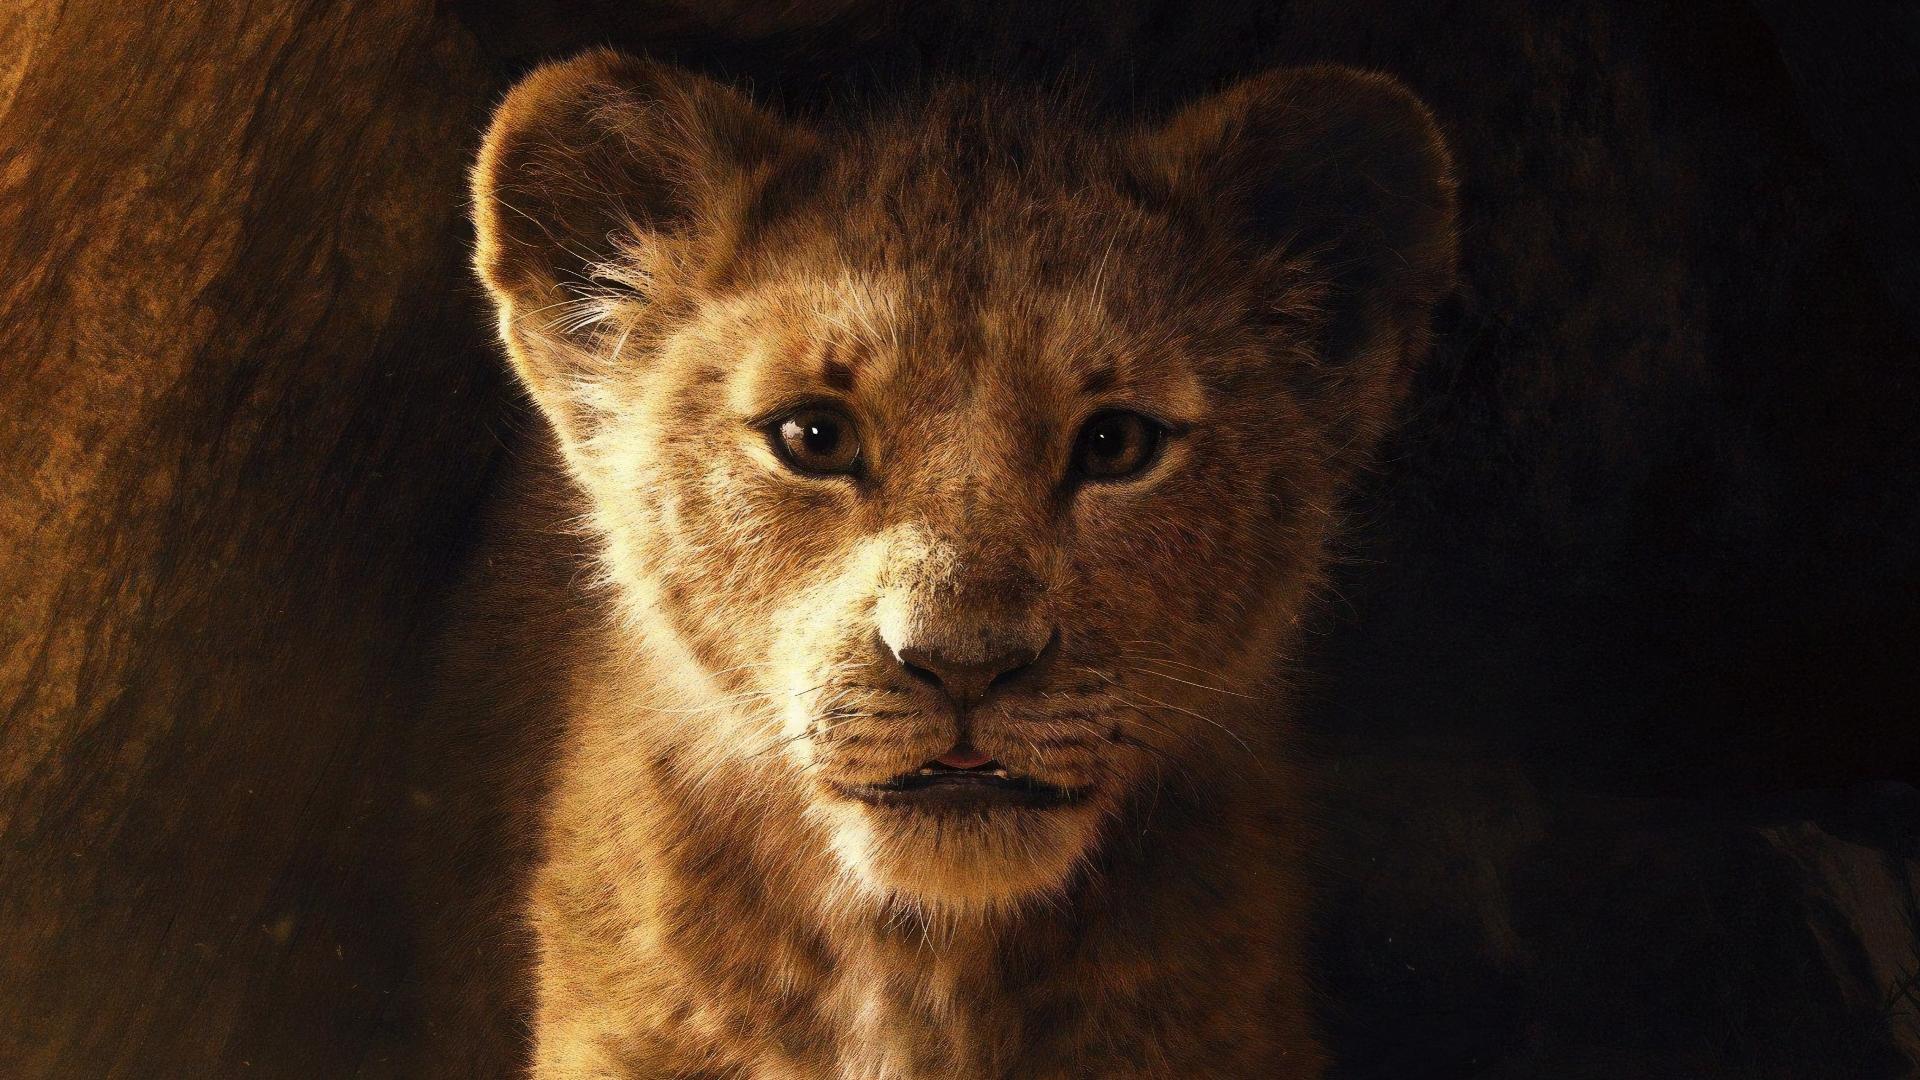 მეფე ლომი / The Lion King